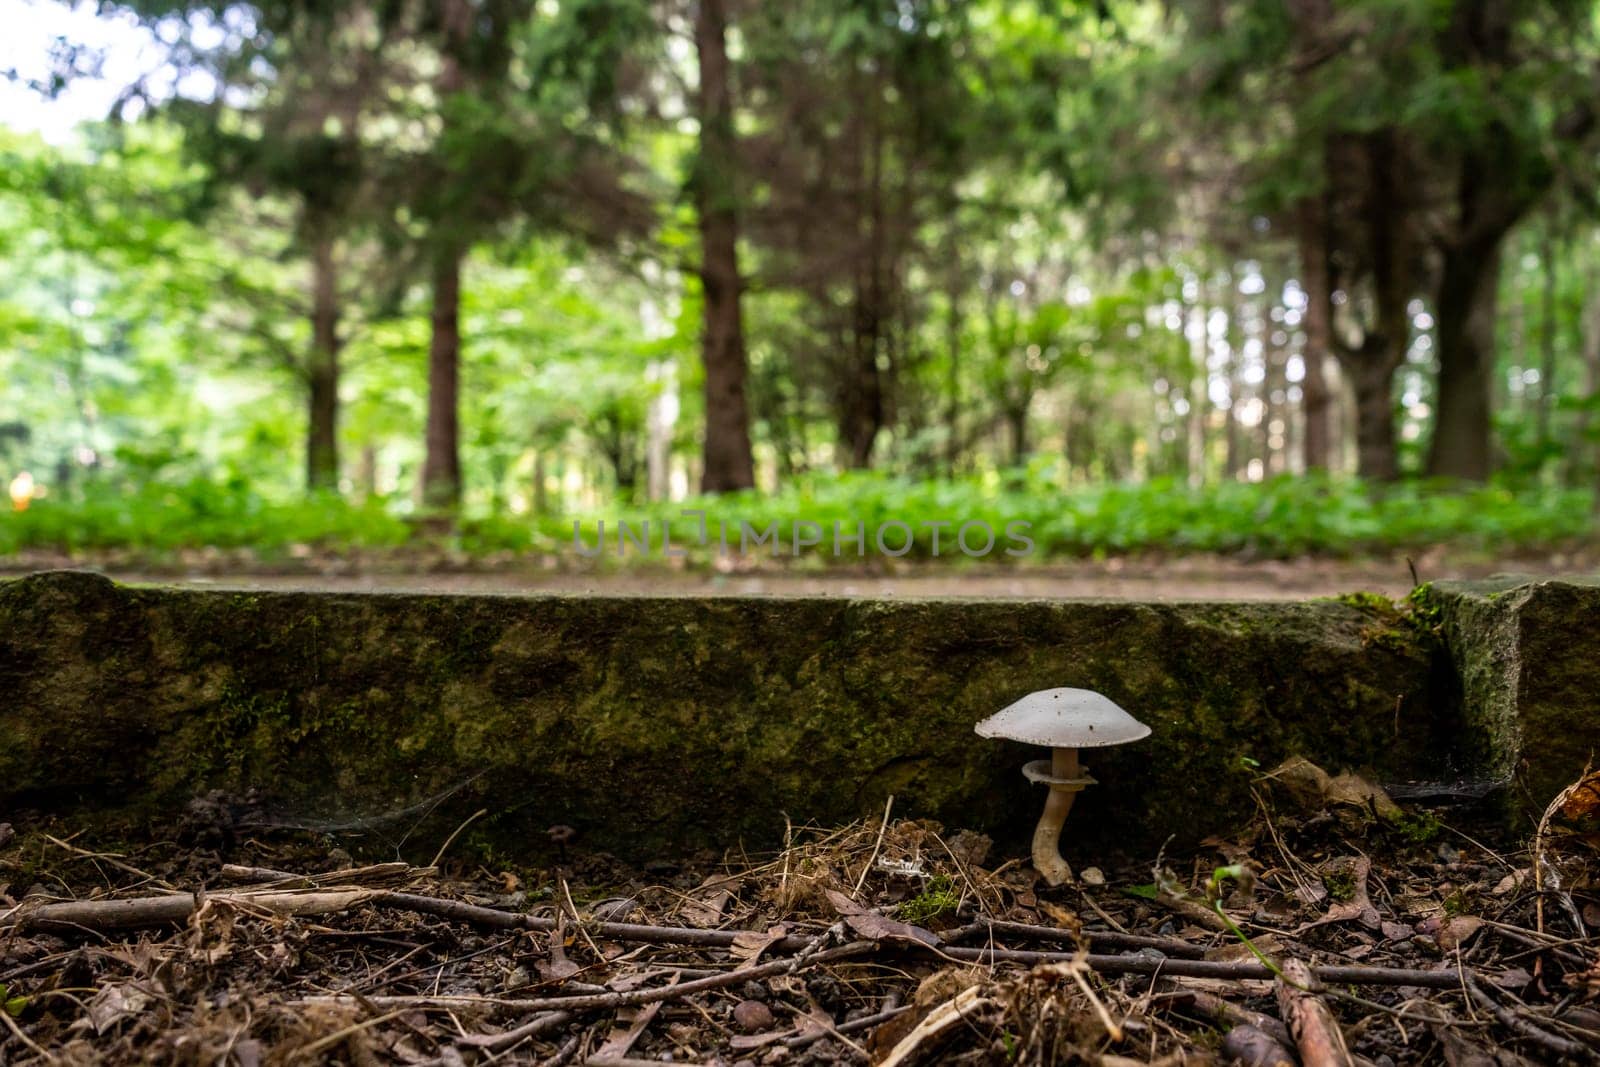 A mushroom grows near the curb in the park.